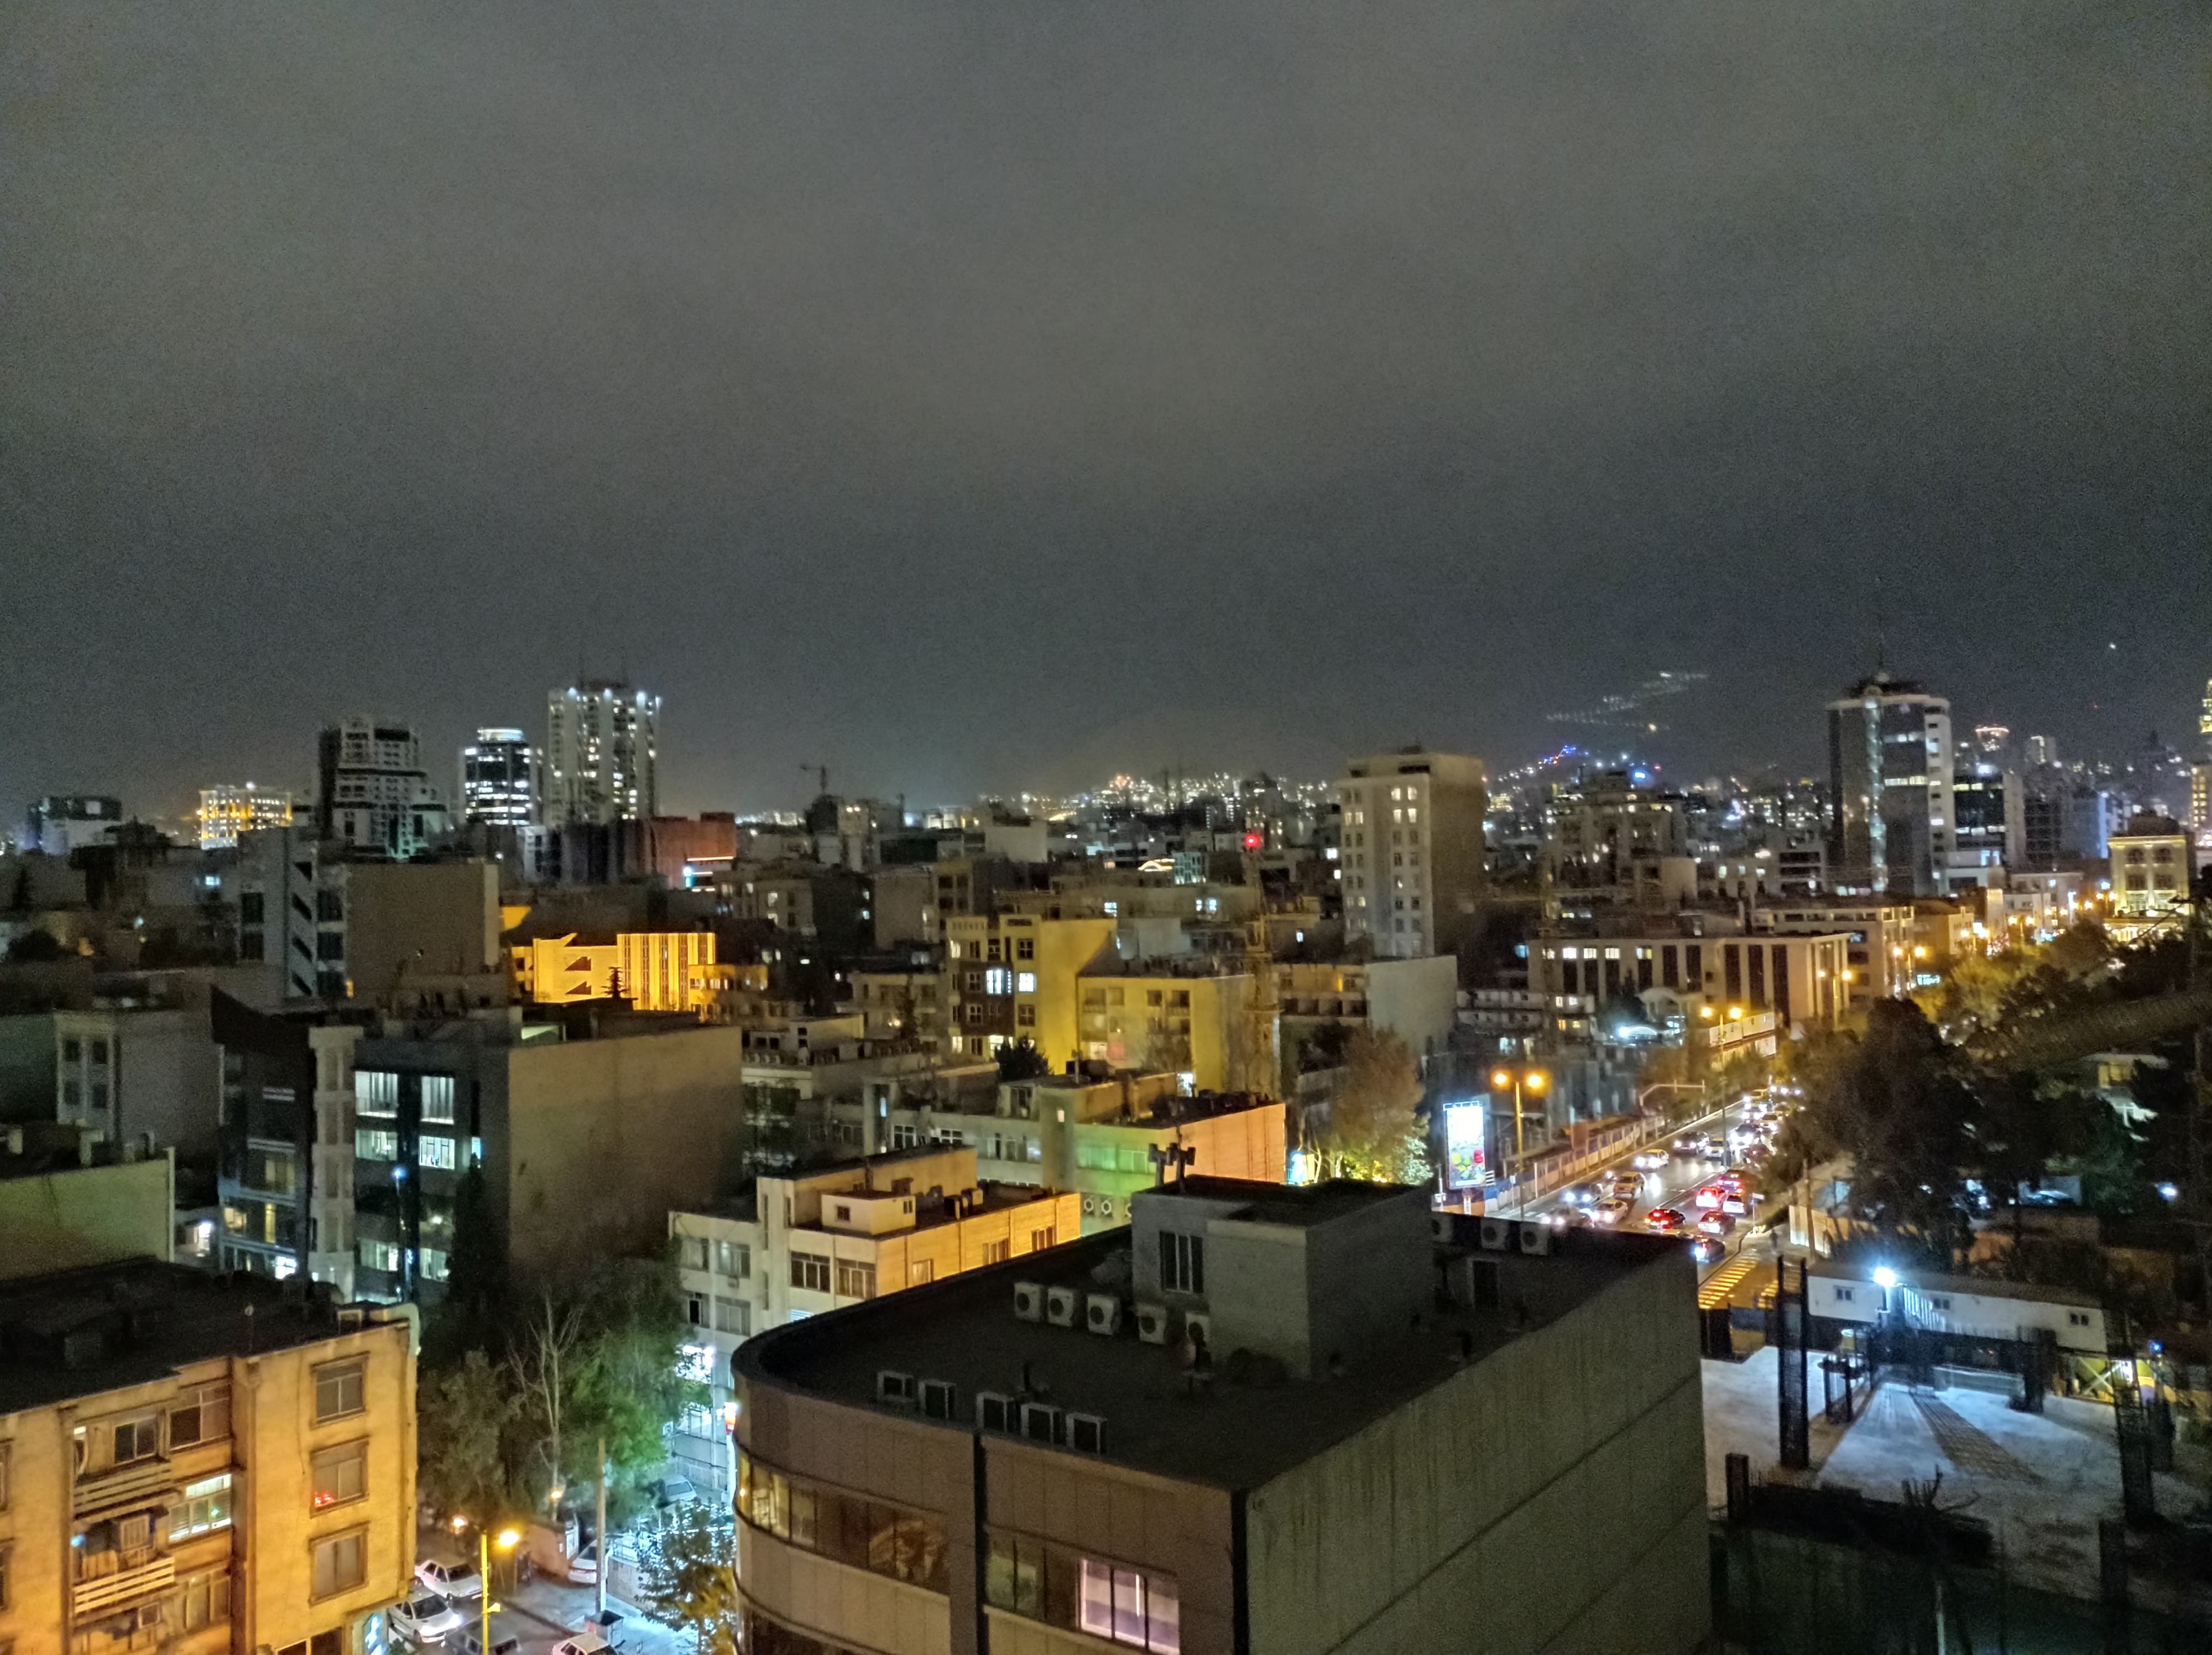 نمونه عکس 1x دوربین اصلی ردمی نوت ۹ در تاریکی - ساختمان های خیابان جردن